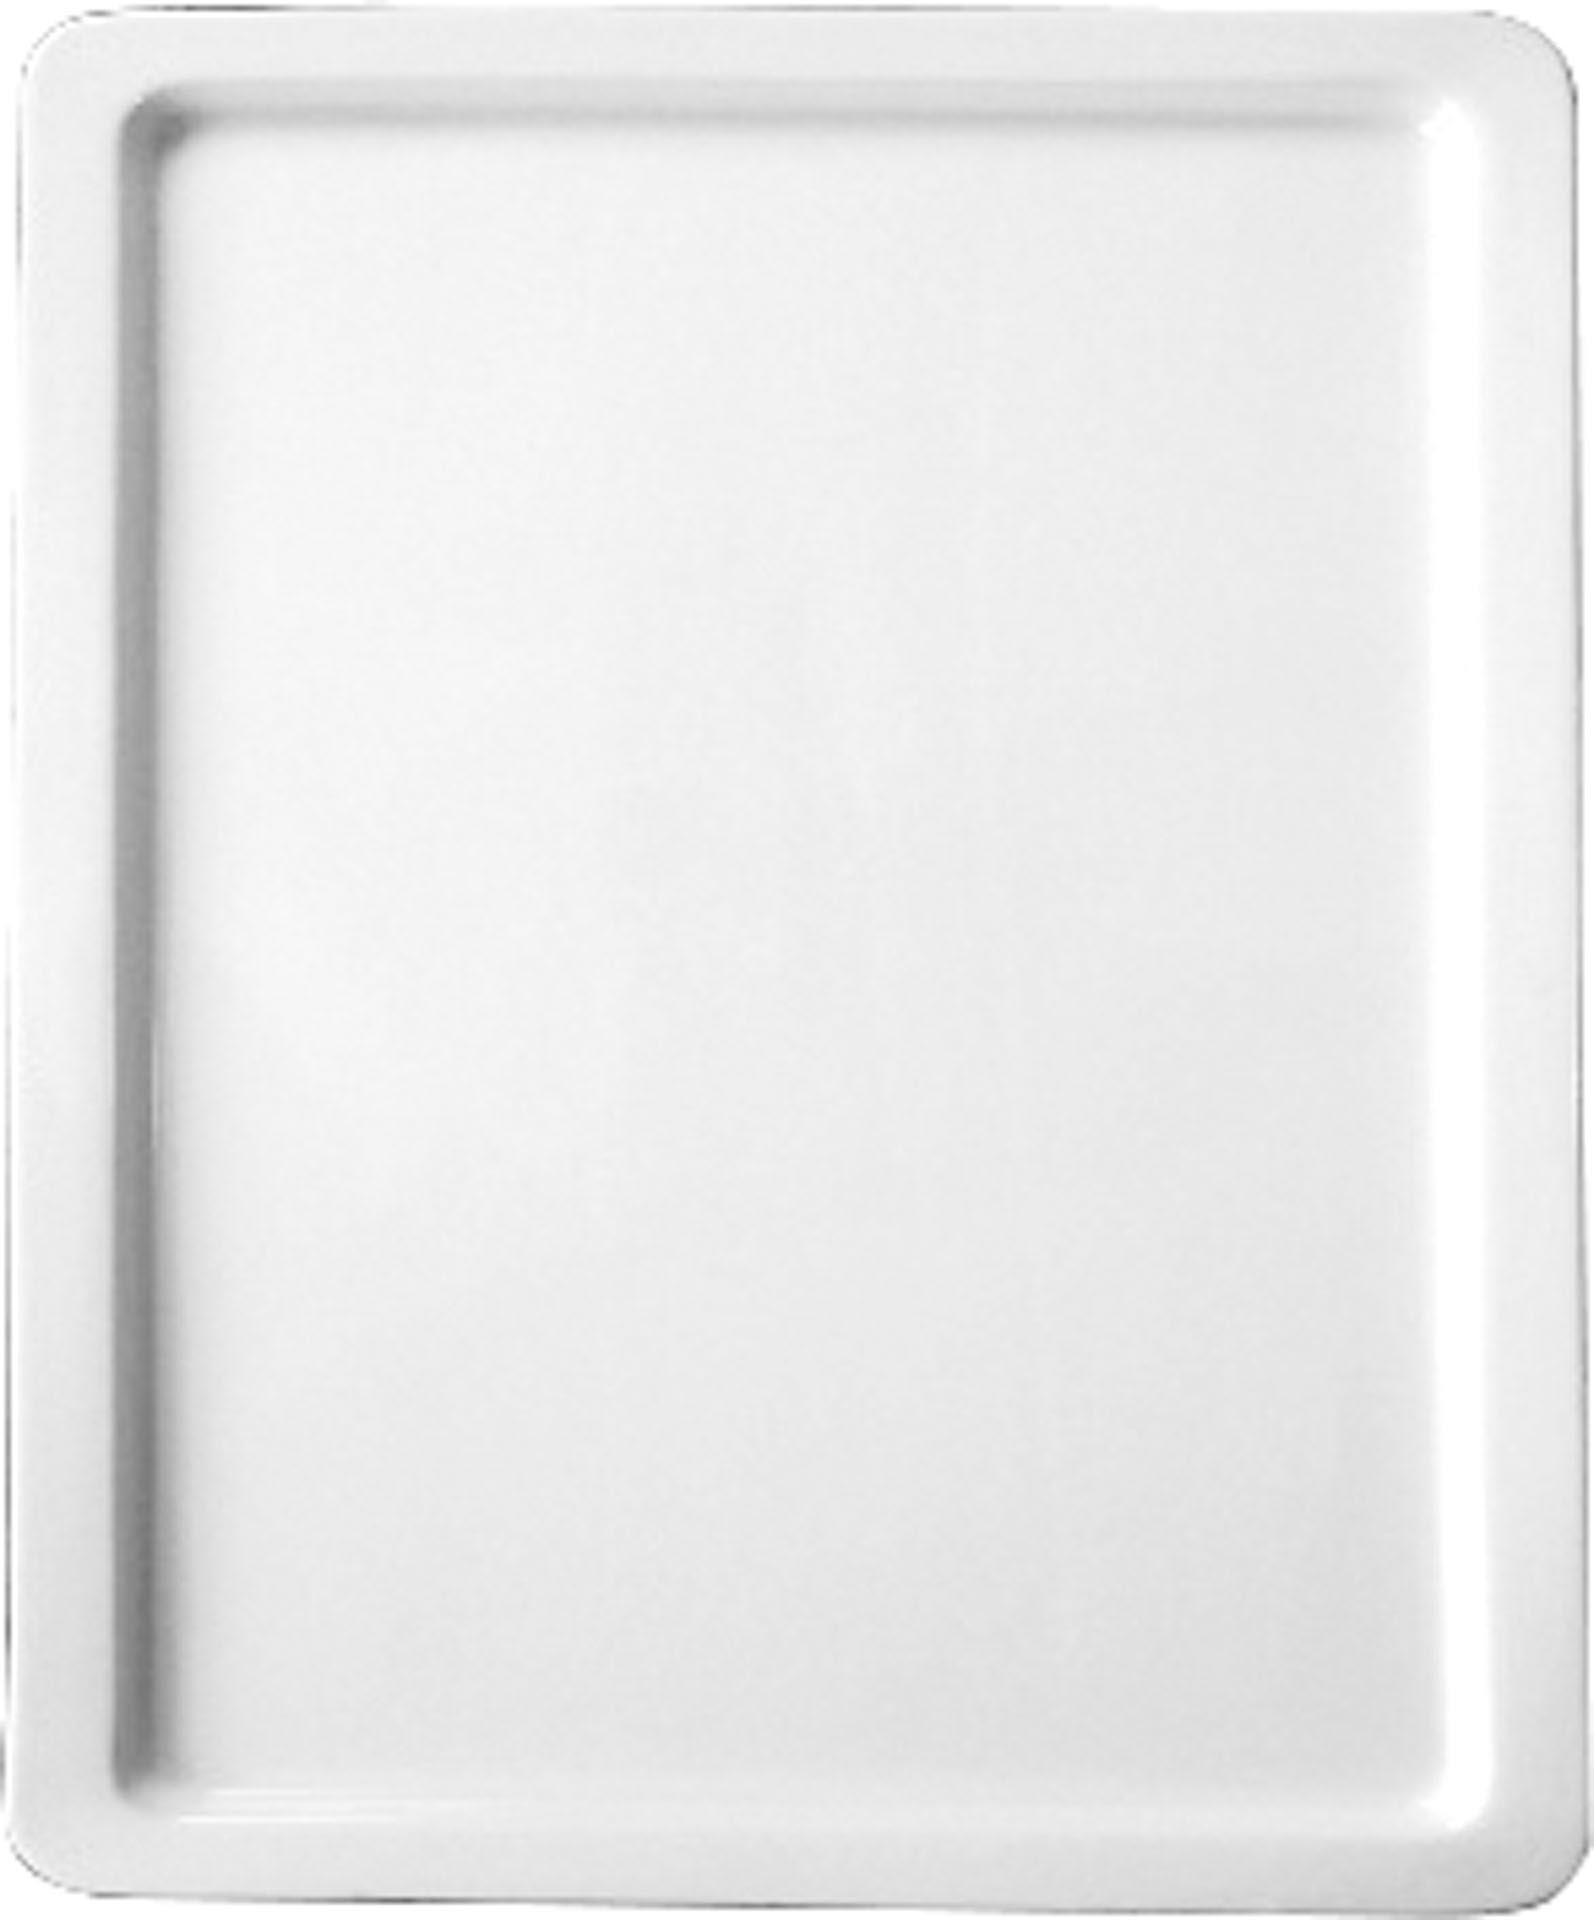 GN-Platte 2/4 - 20 mm, weiß, Porzellan